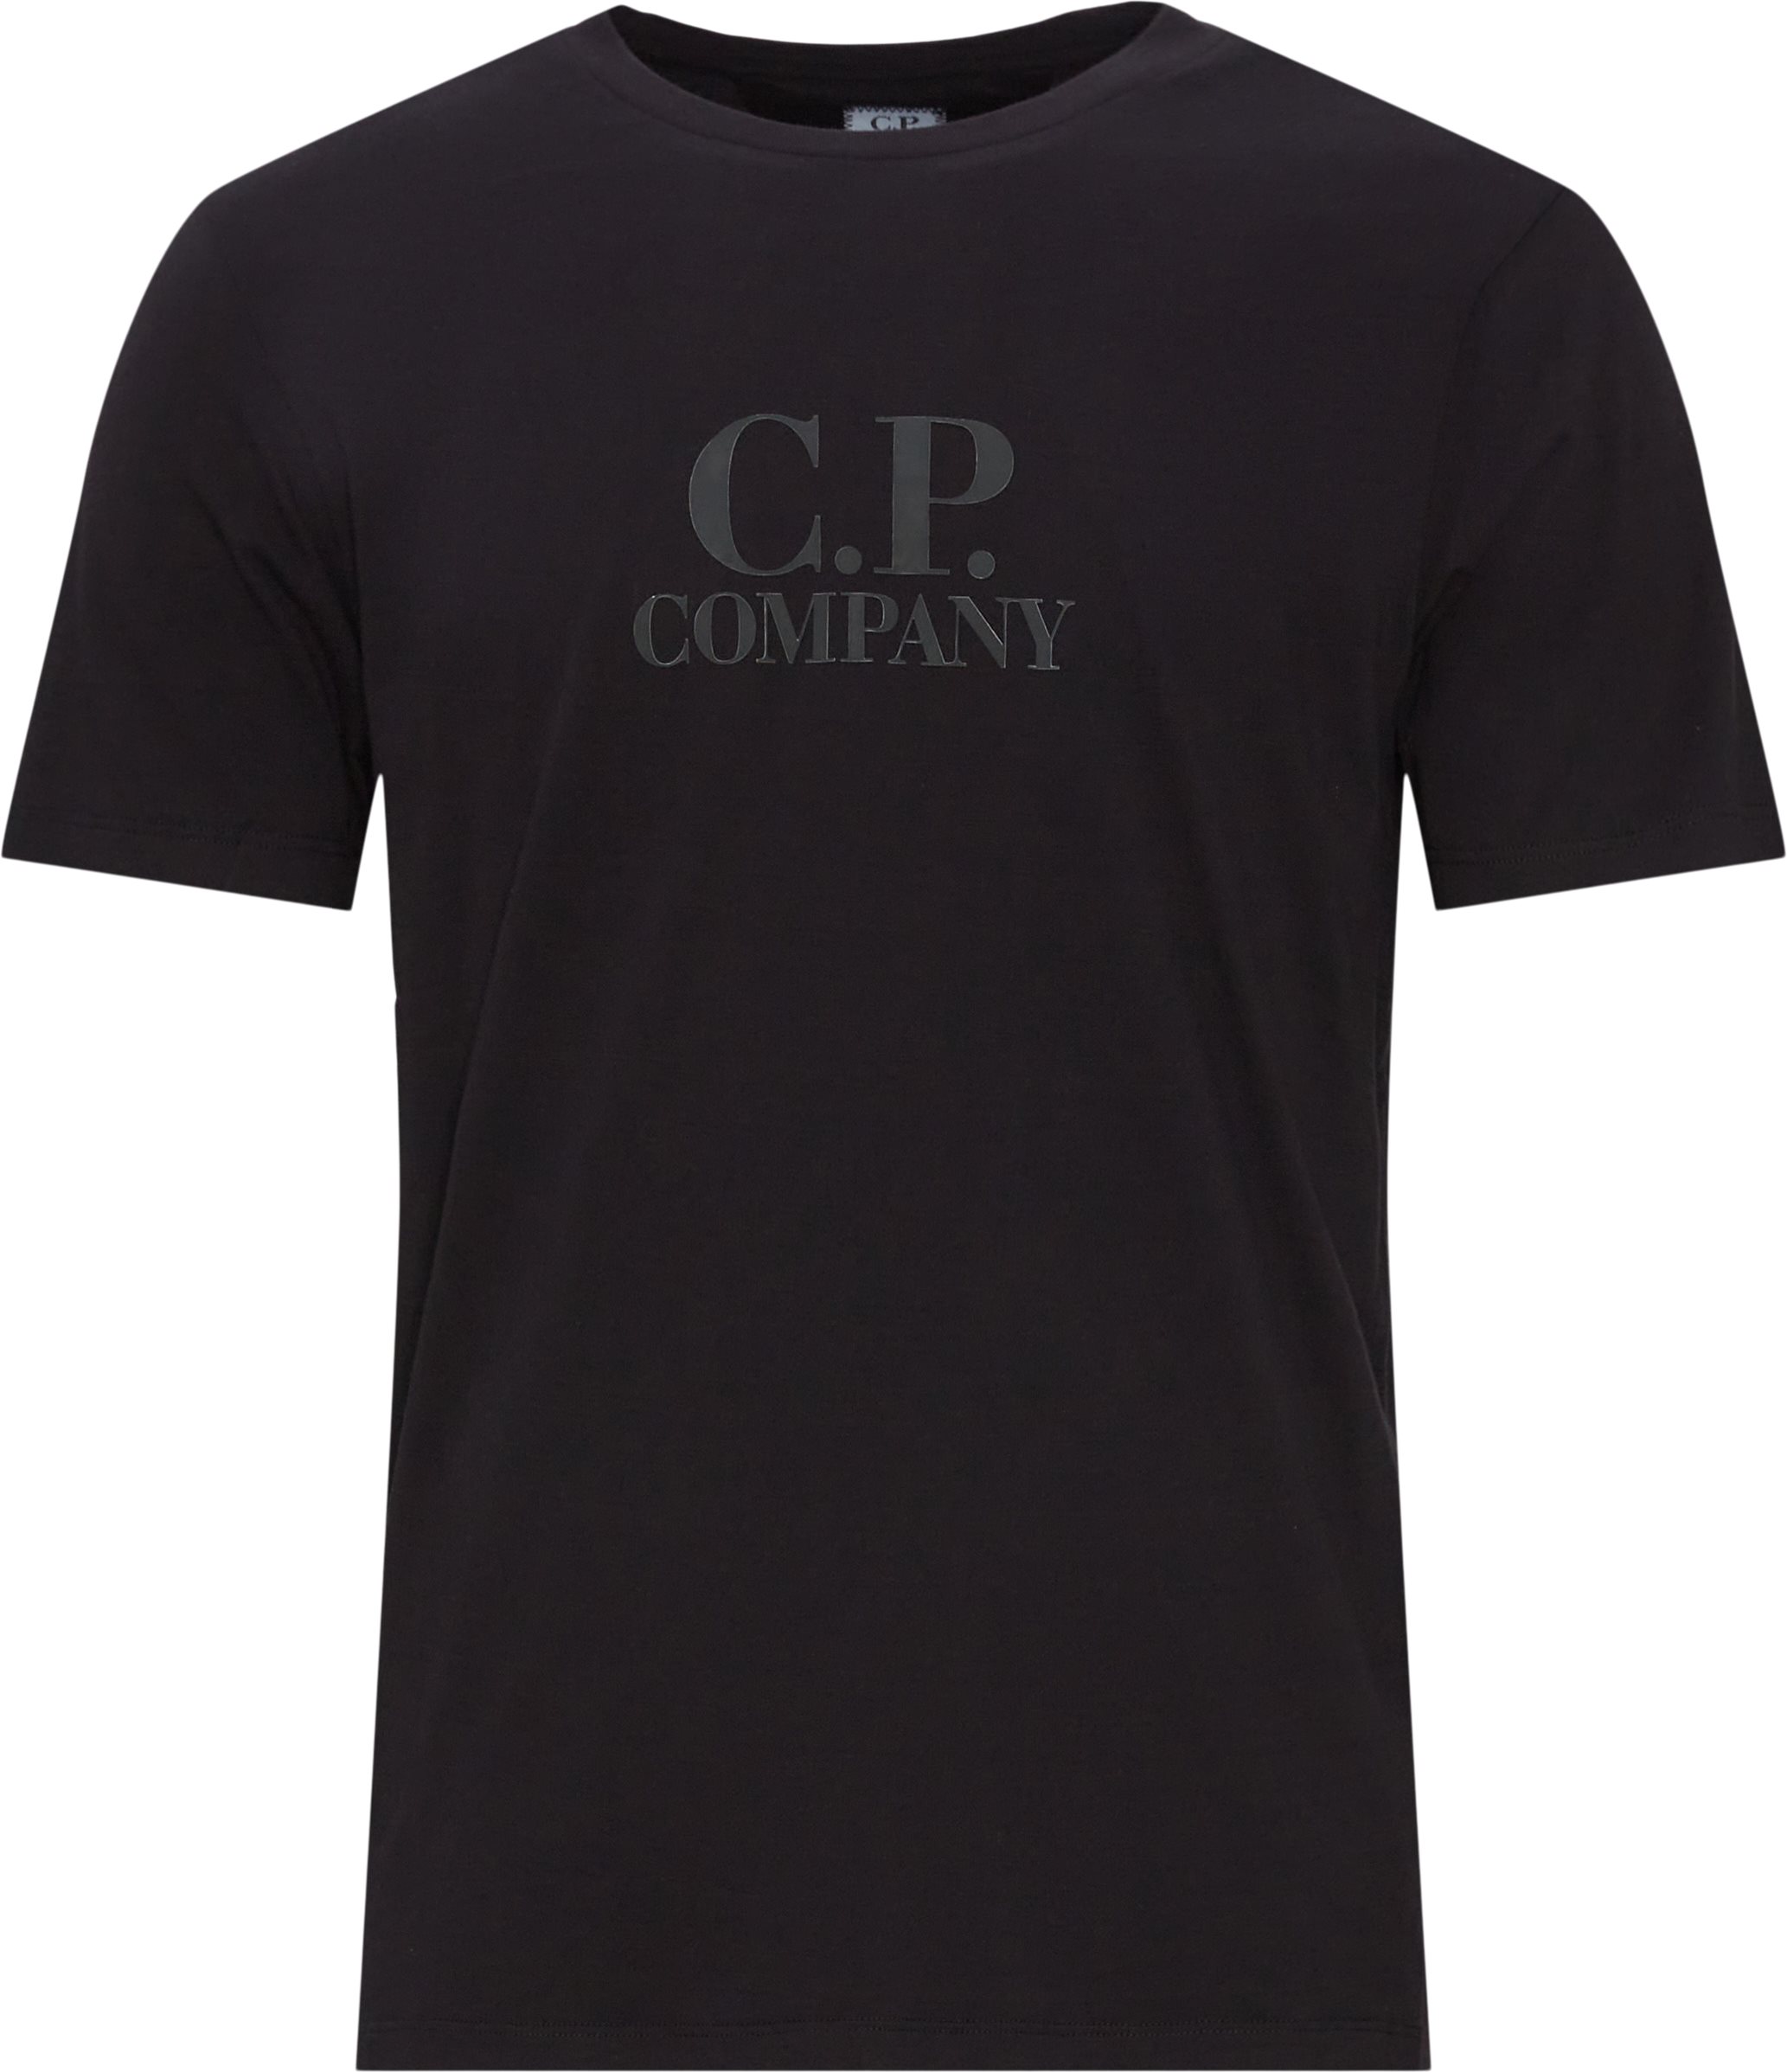 C.P. Company T-shirts TS119A 5100W Sort